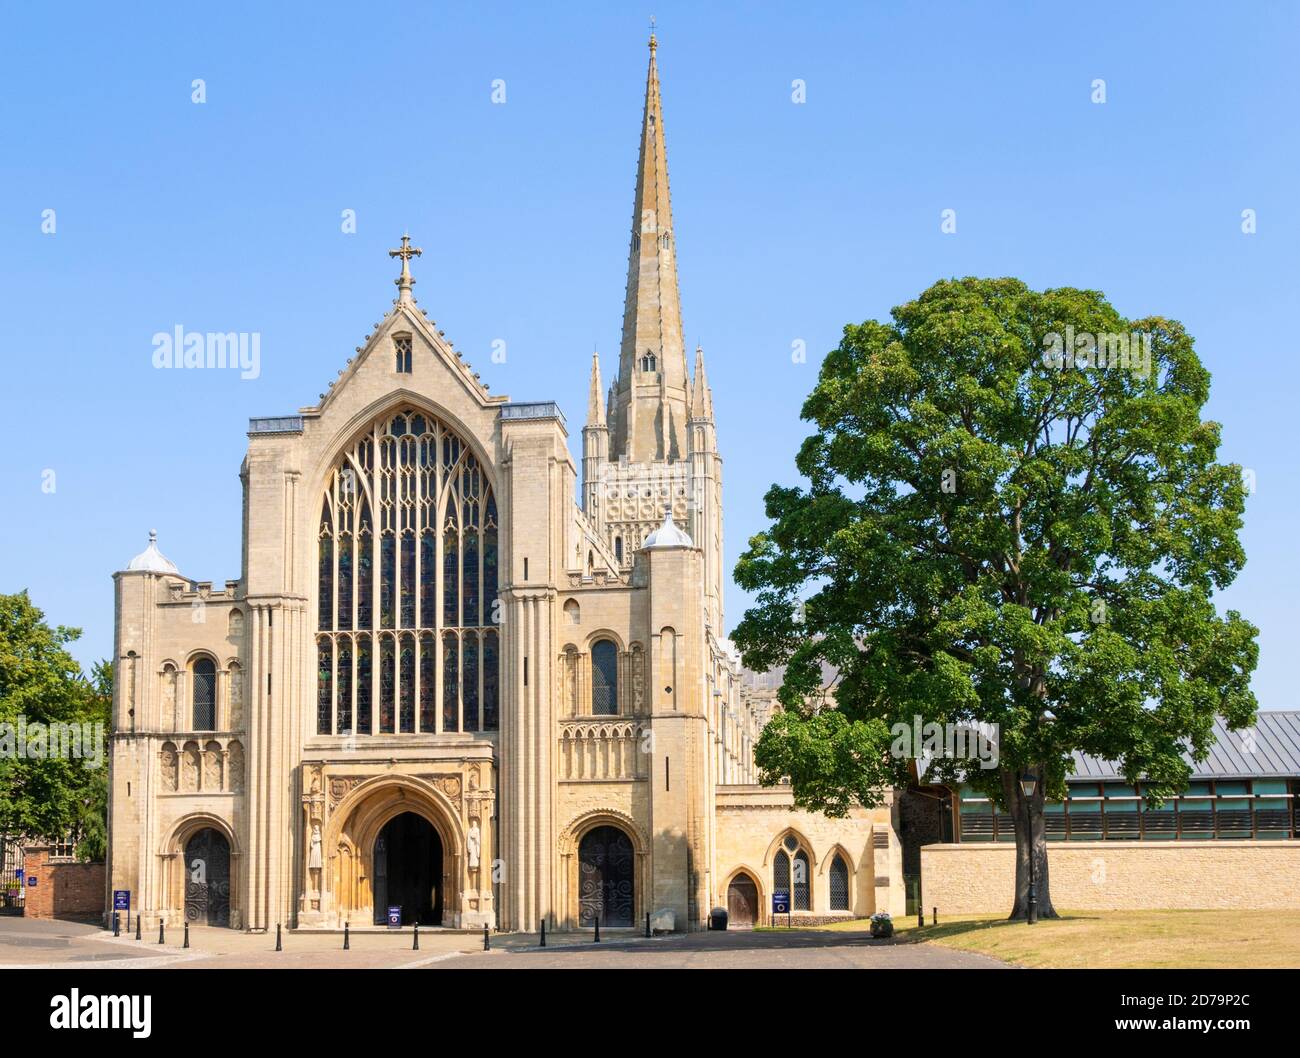 La cathédrale de Norwich face ouest et la porte d'entrée de Spire West La cathédrale de Norwich et la cathédrale de Norwich sont les plus prune de Norwich Norfolk East Anglia Angleterre GB Banque D'Images